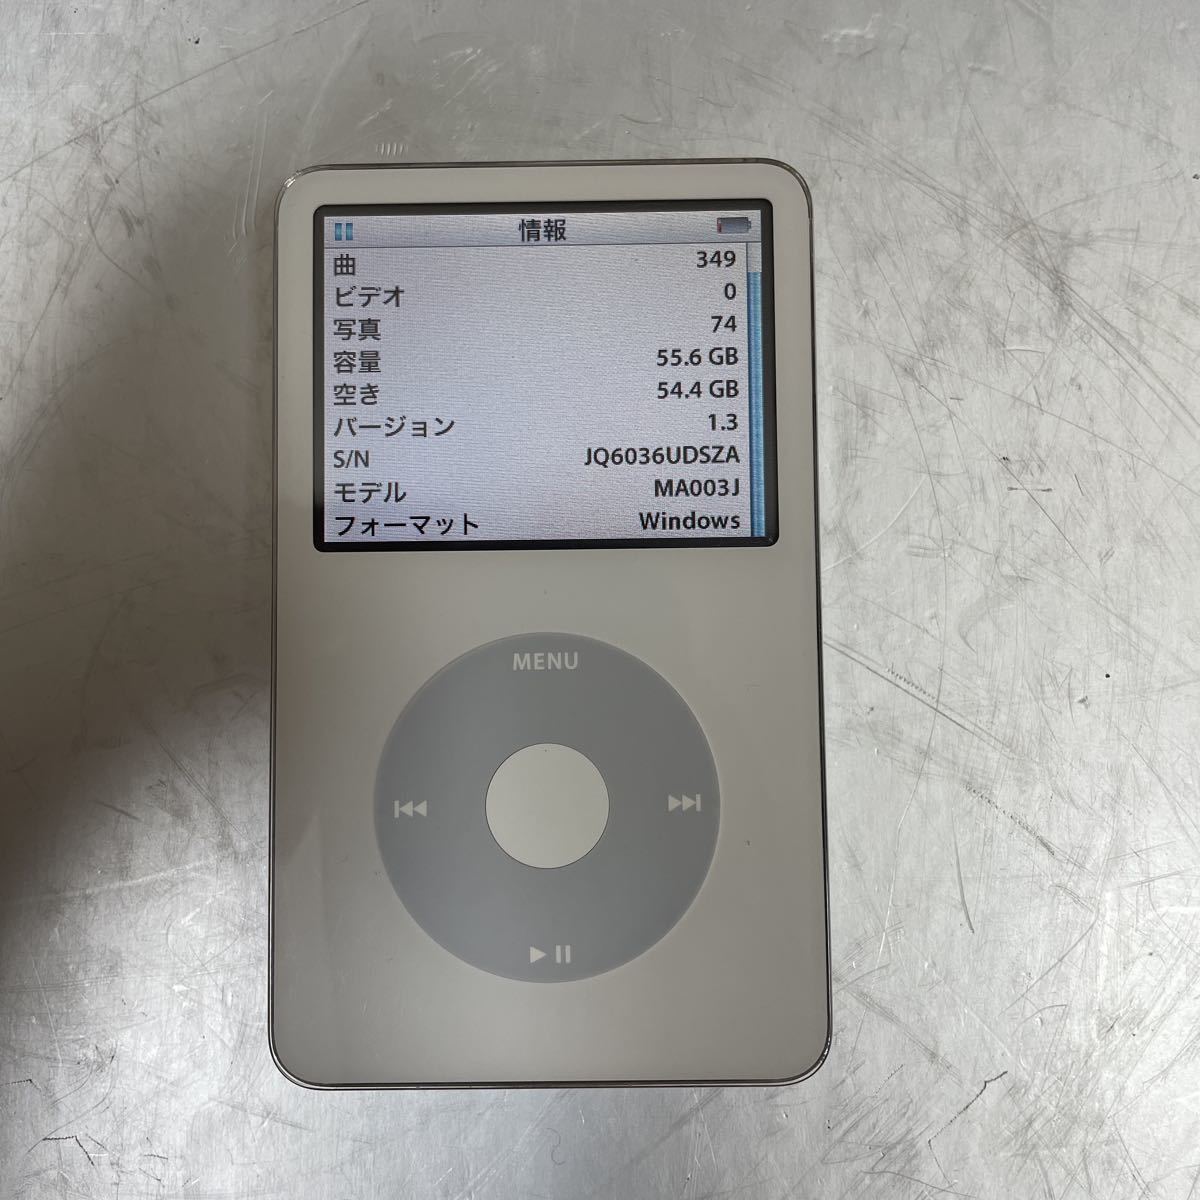 【海外 iPod Apple classic 白 ホワイト SD256GB 第5世代 ポータブルプレーヤー